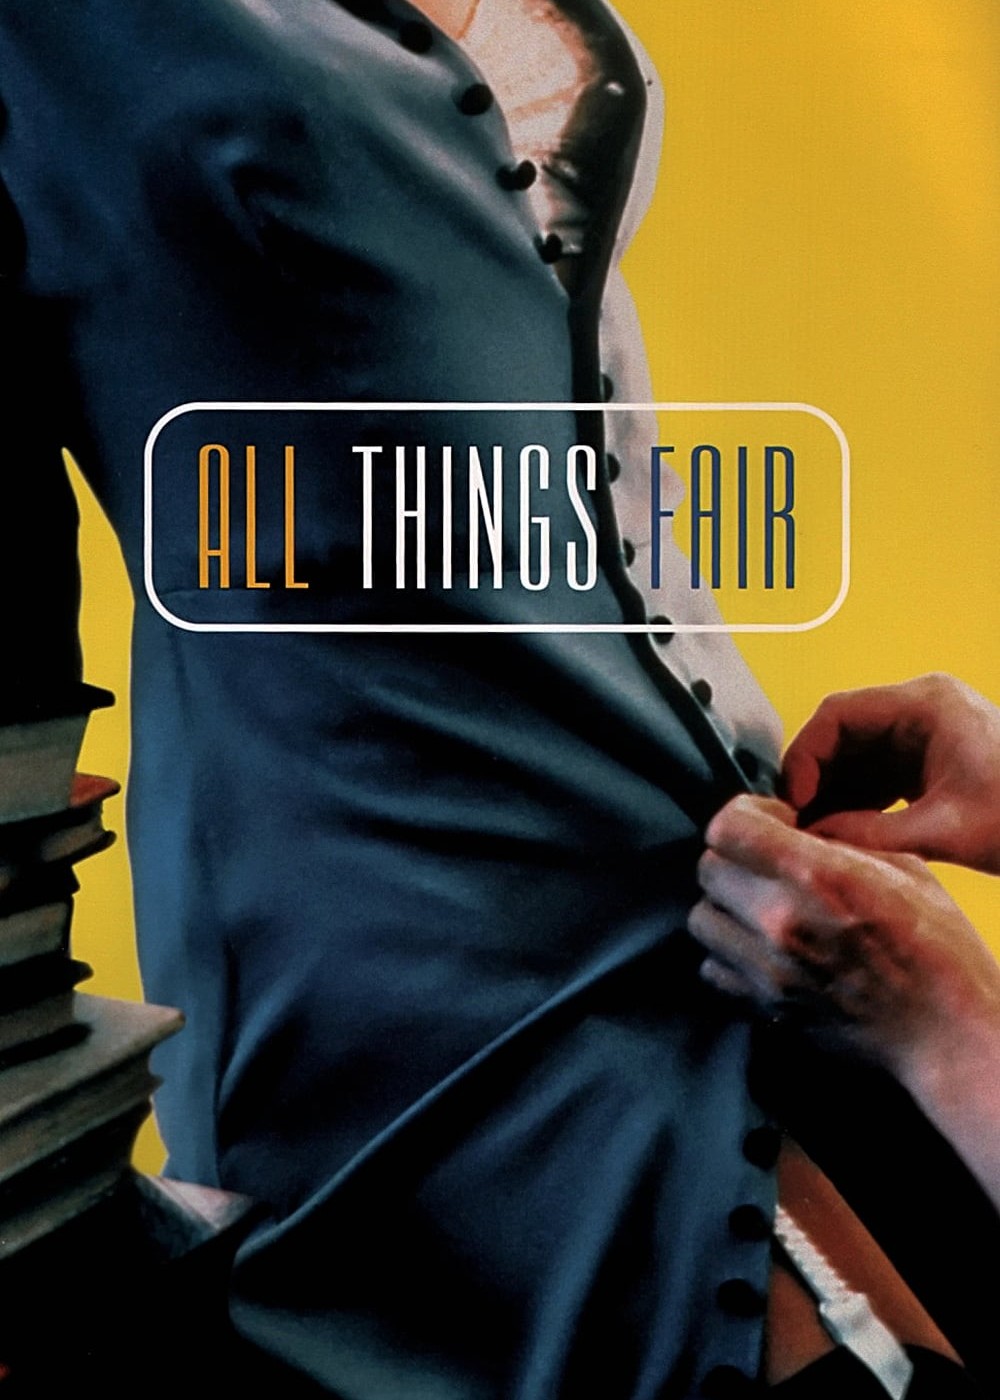 All Things Fair | All Things Fair (1995)